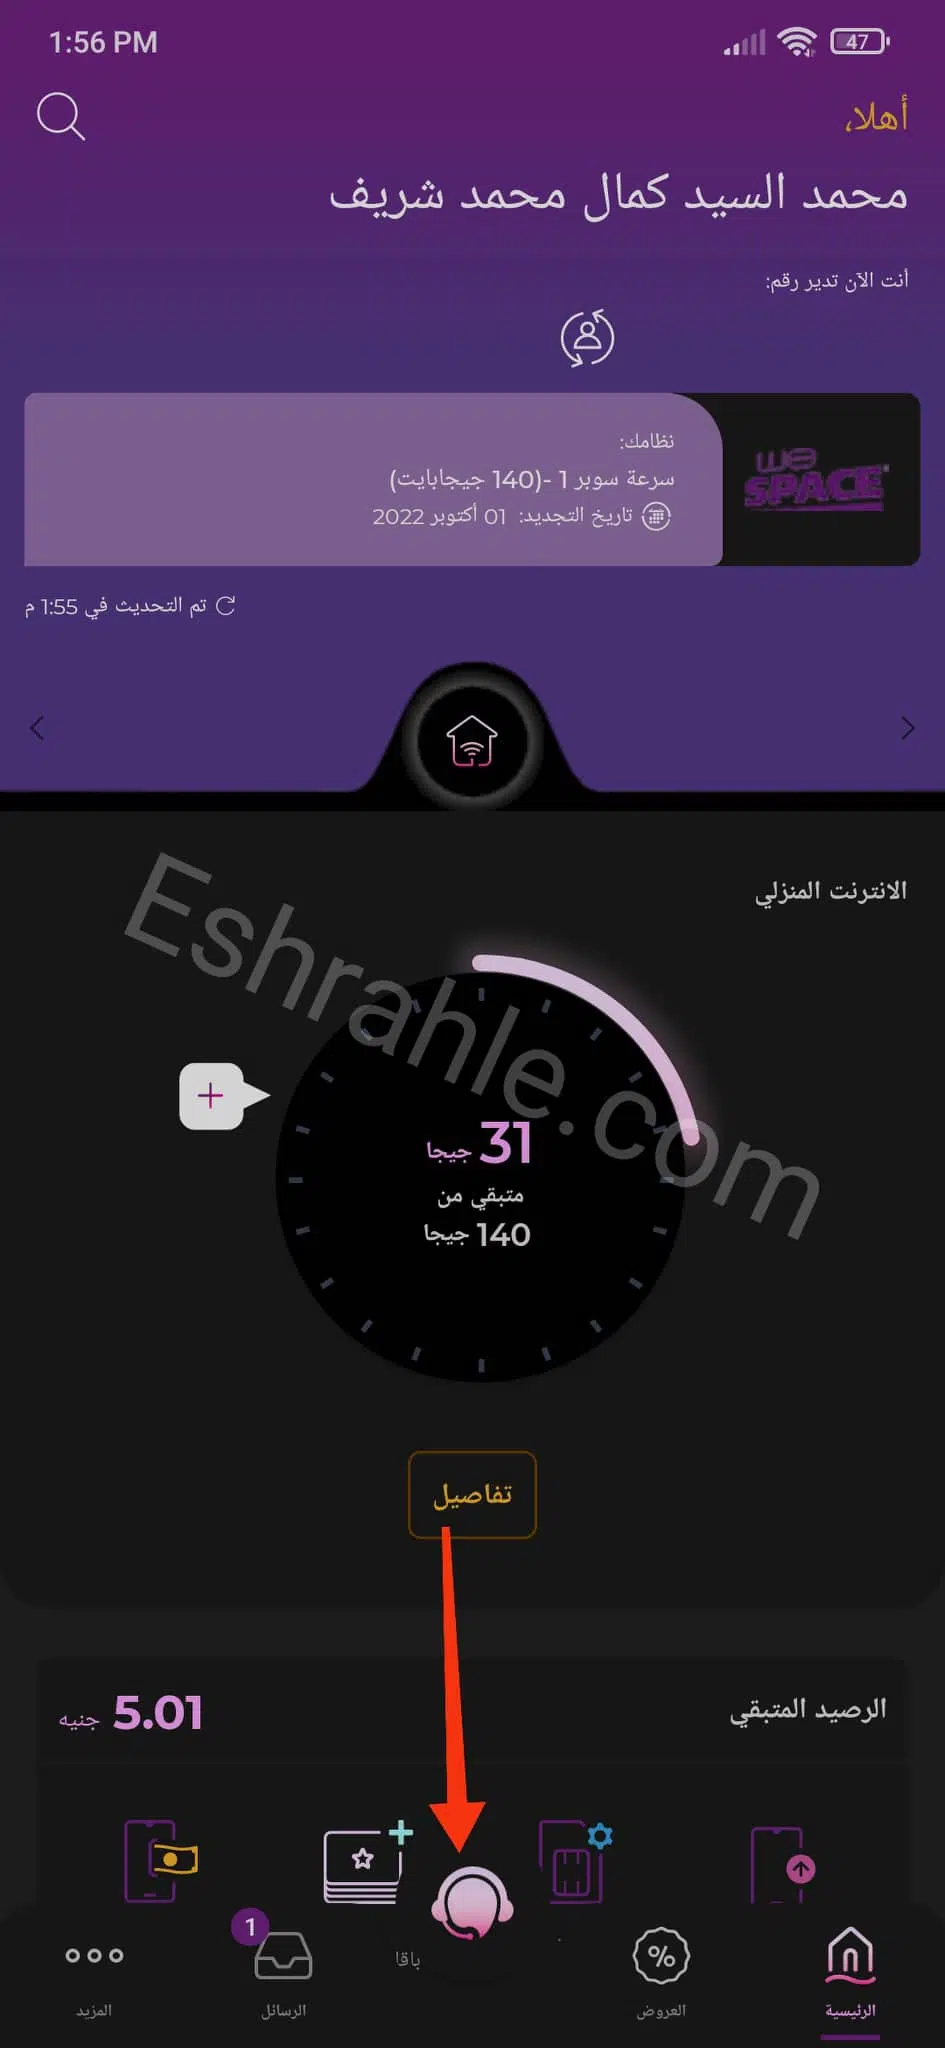 تحميل تطبيق ماي وي my we لادارة خطك - الانترنت الارضي 8